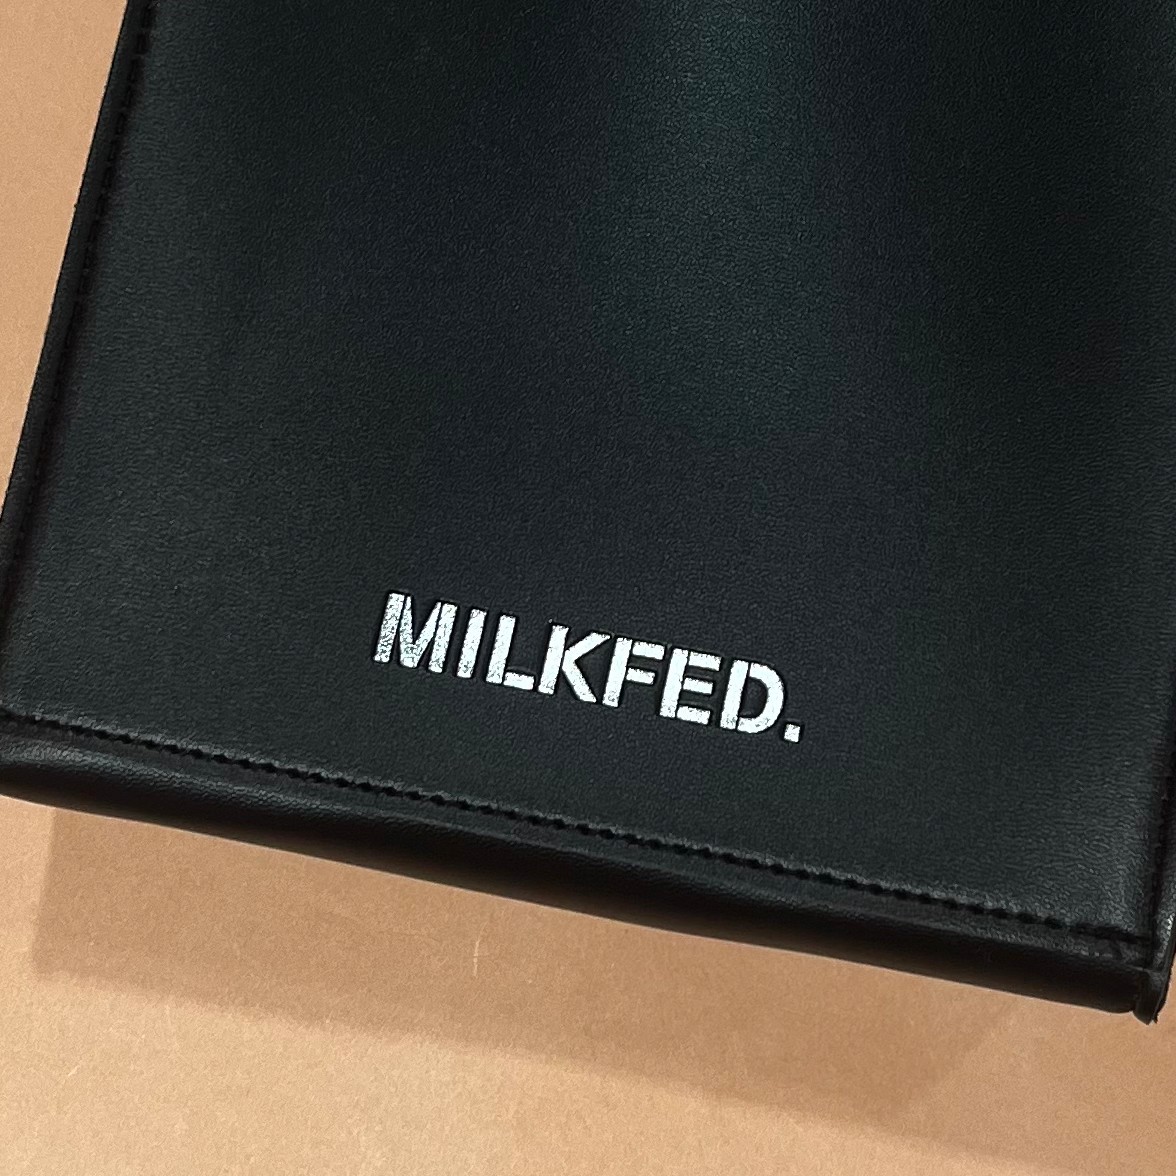 MILKFED. SHOULDER BAG & CARD HOLDER BOOKのショルダーバッグの前面ロゴ